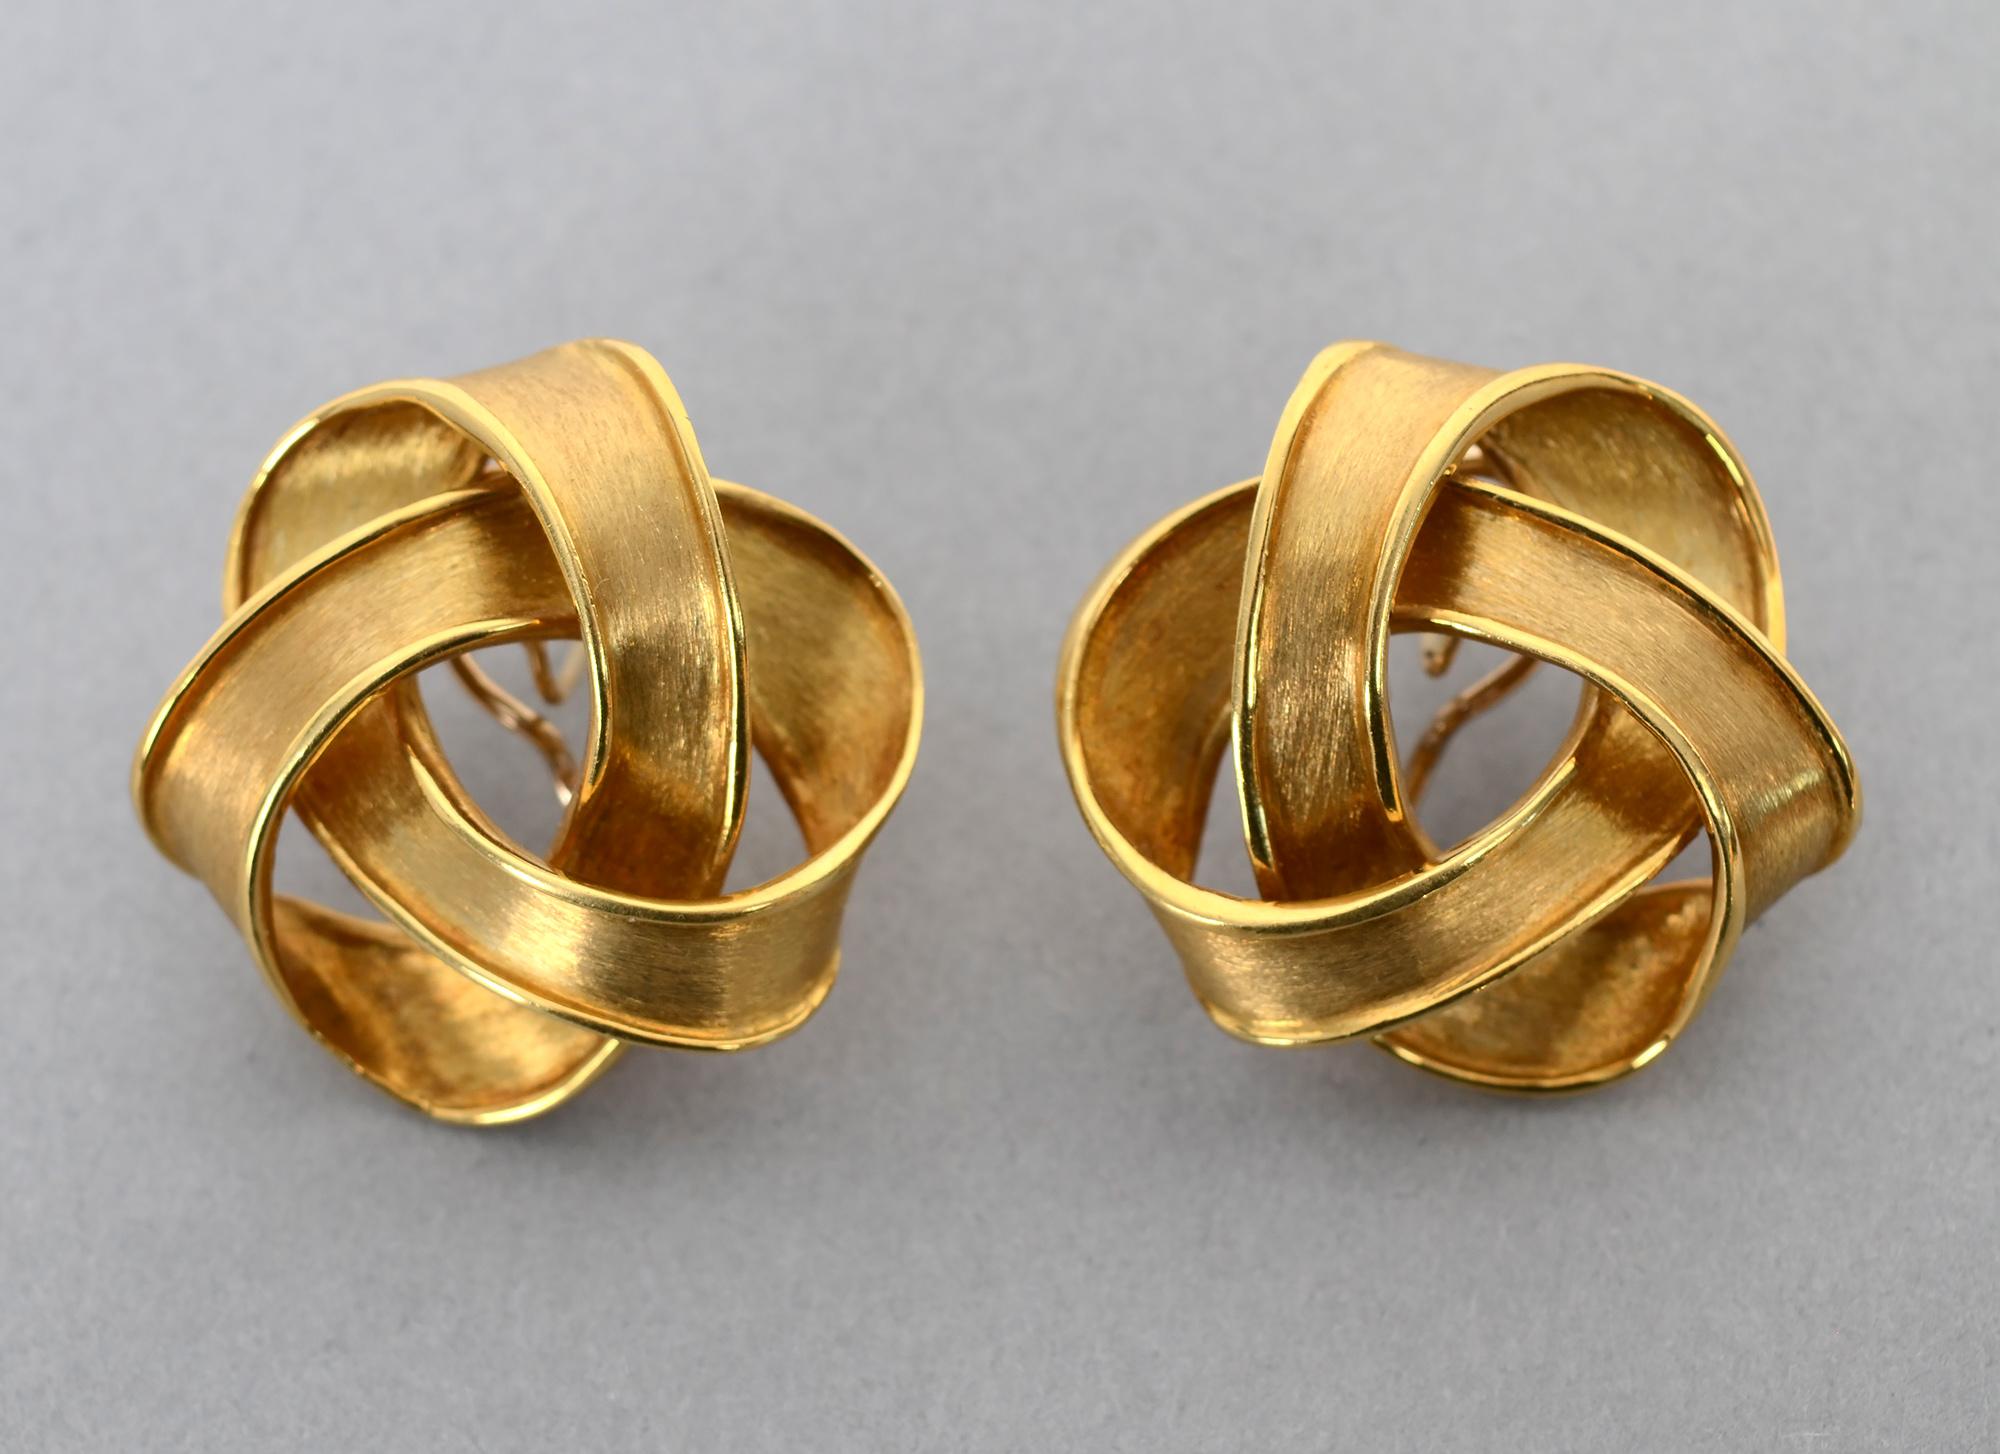 Große, sportliche Ohrringe aus 18 Karat Gold von dem verstorbenen New Yorker Designer Boris LeBeau. Das gewirbelte Muster sieht aus wie verschlungene Bänder.
Die Ohrringe  messen 1 7/16